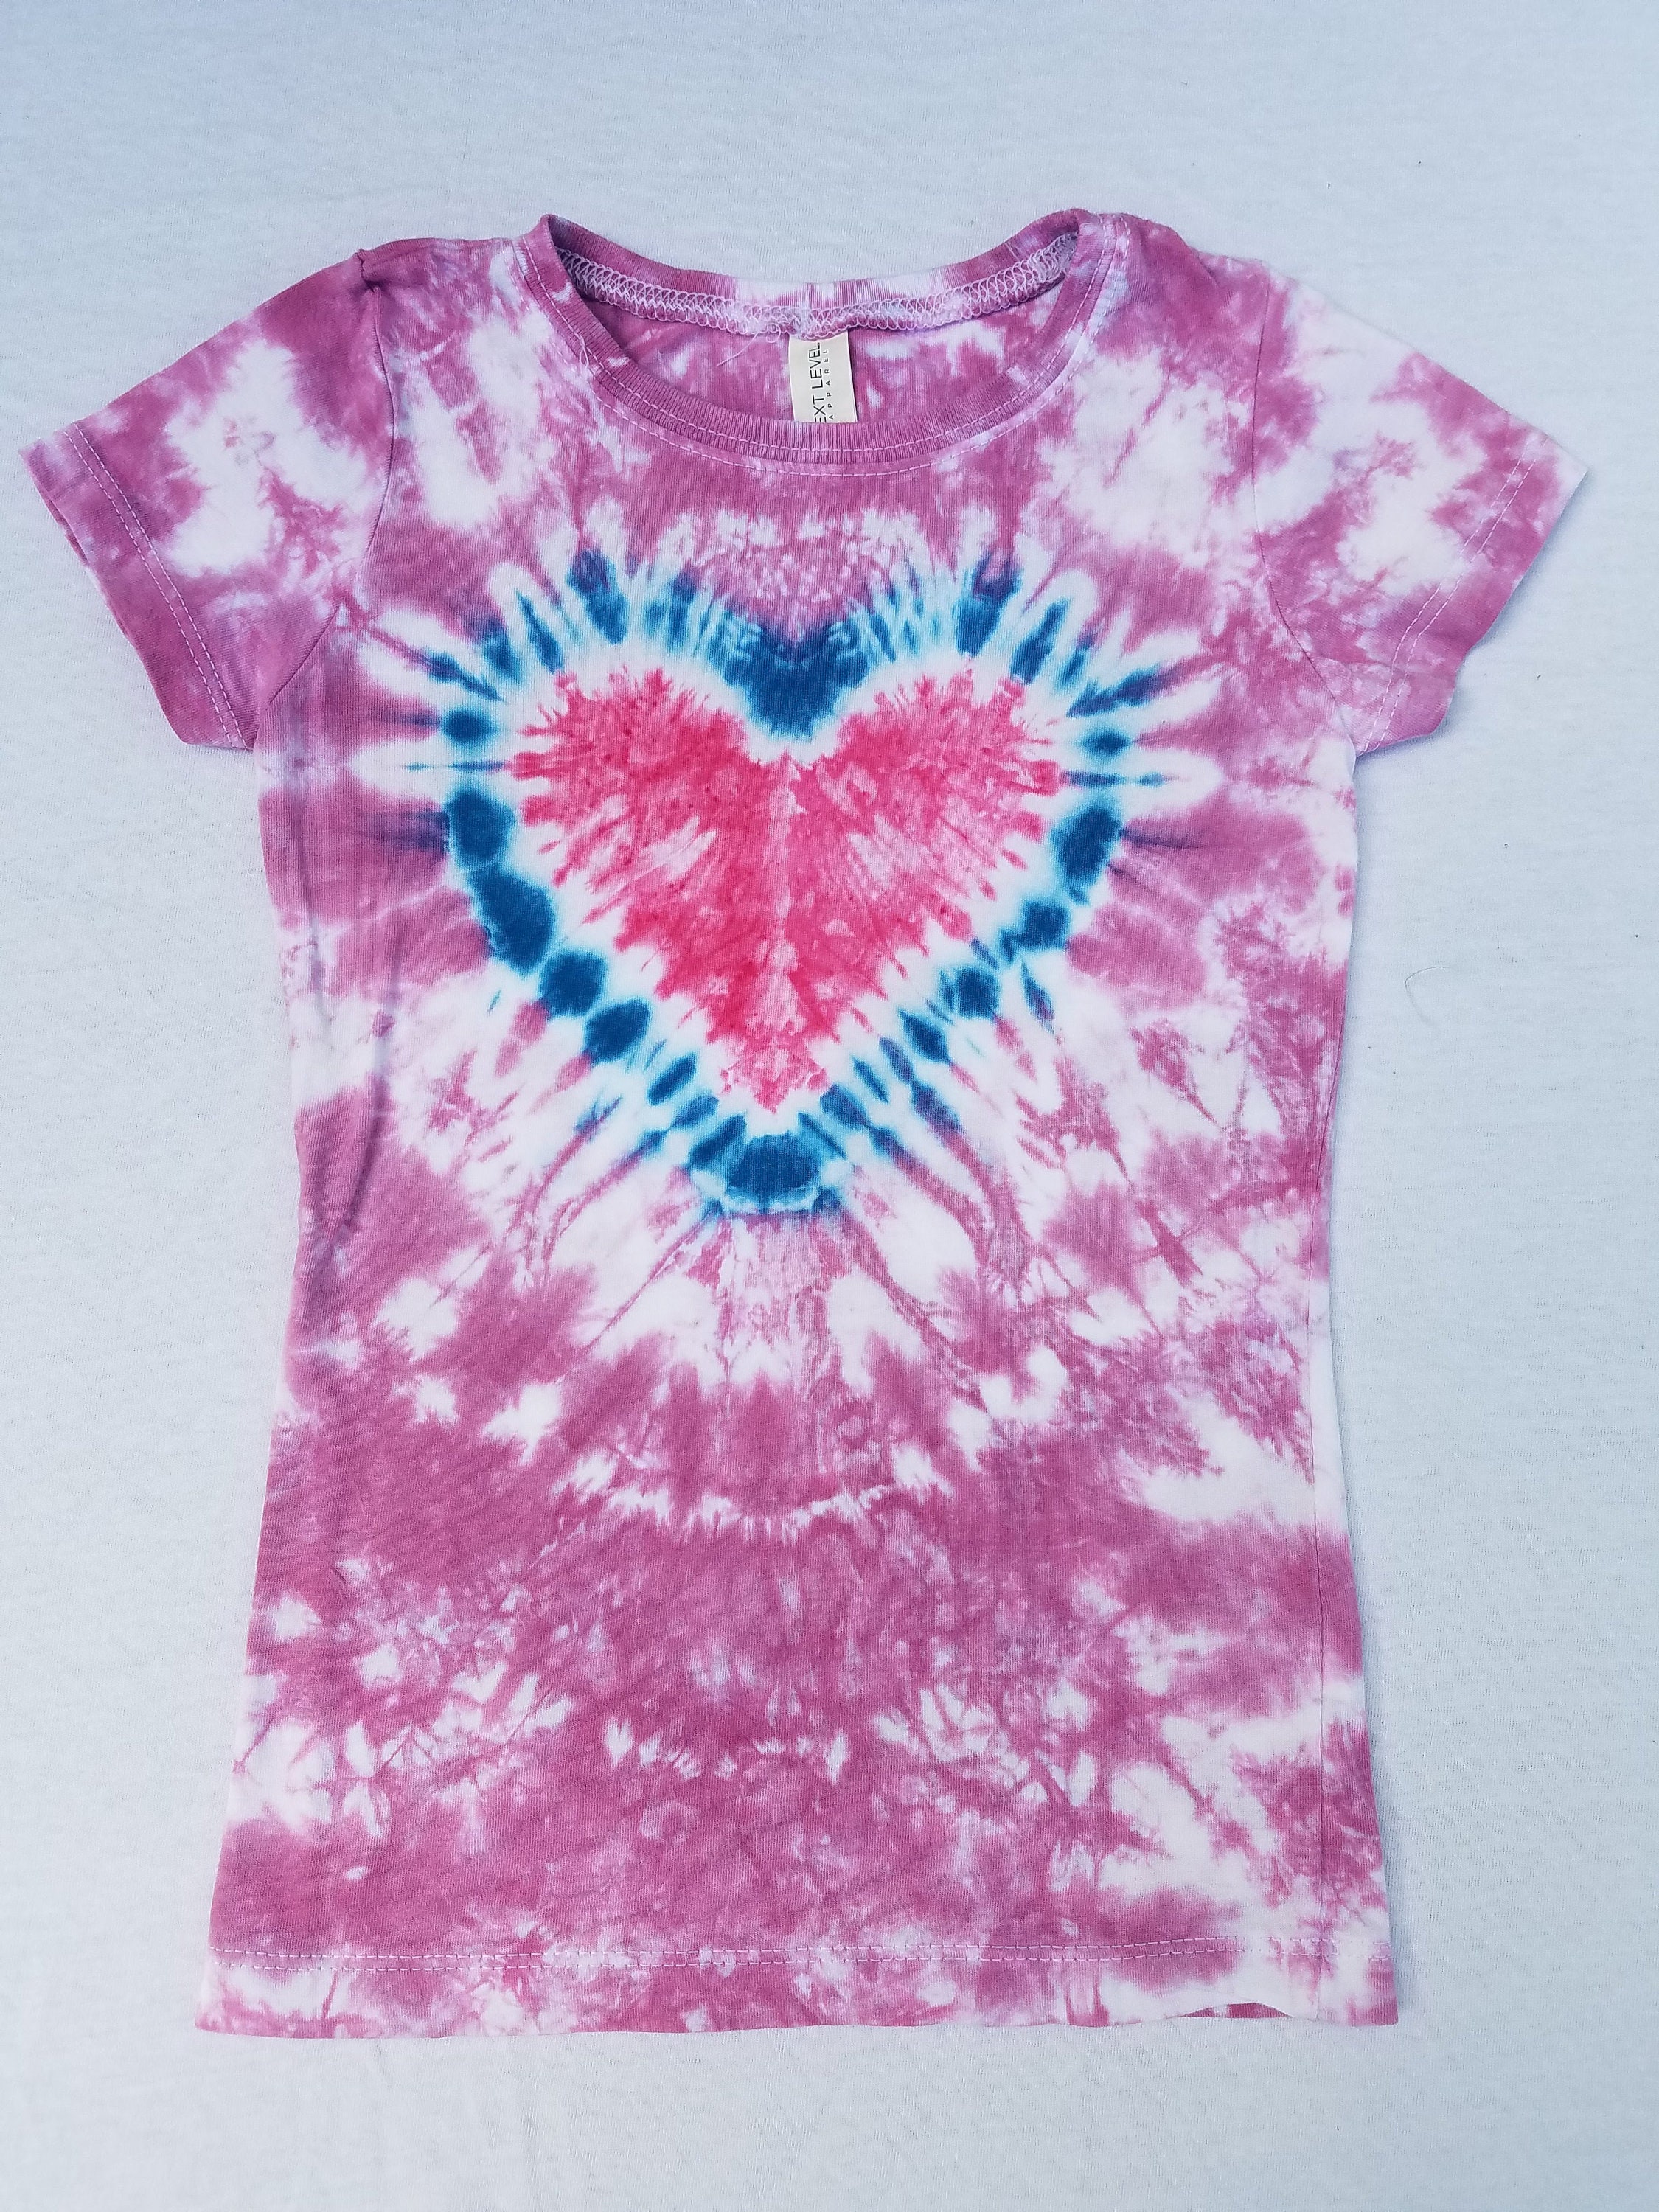 Pink Heart Tie Dye Shirt // Tie Dye Heart // Kids Tie Dye | Etsy